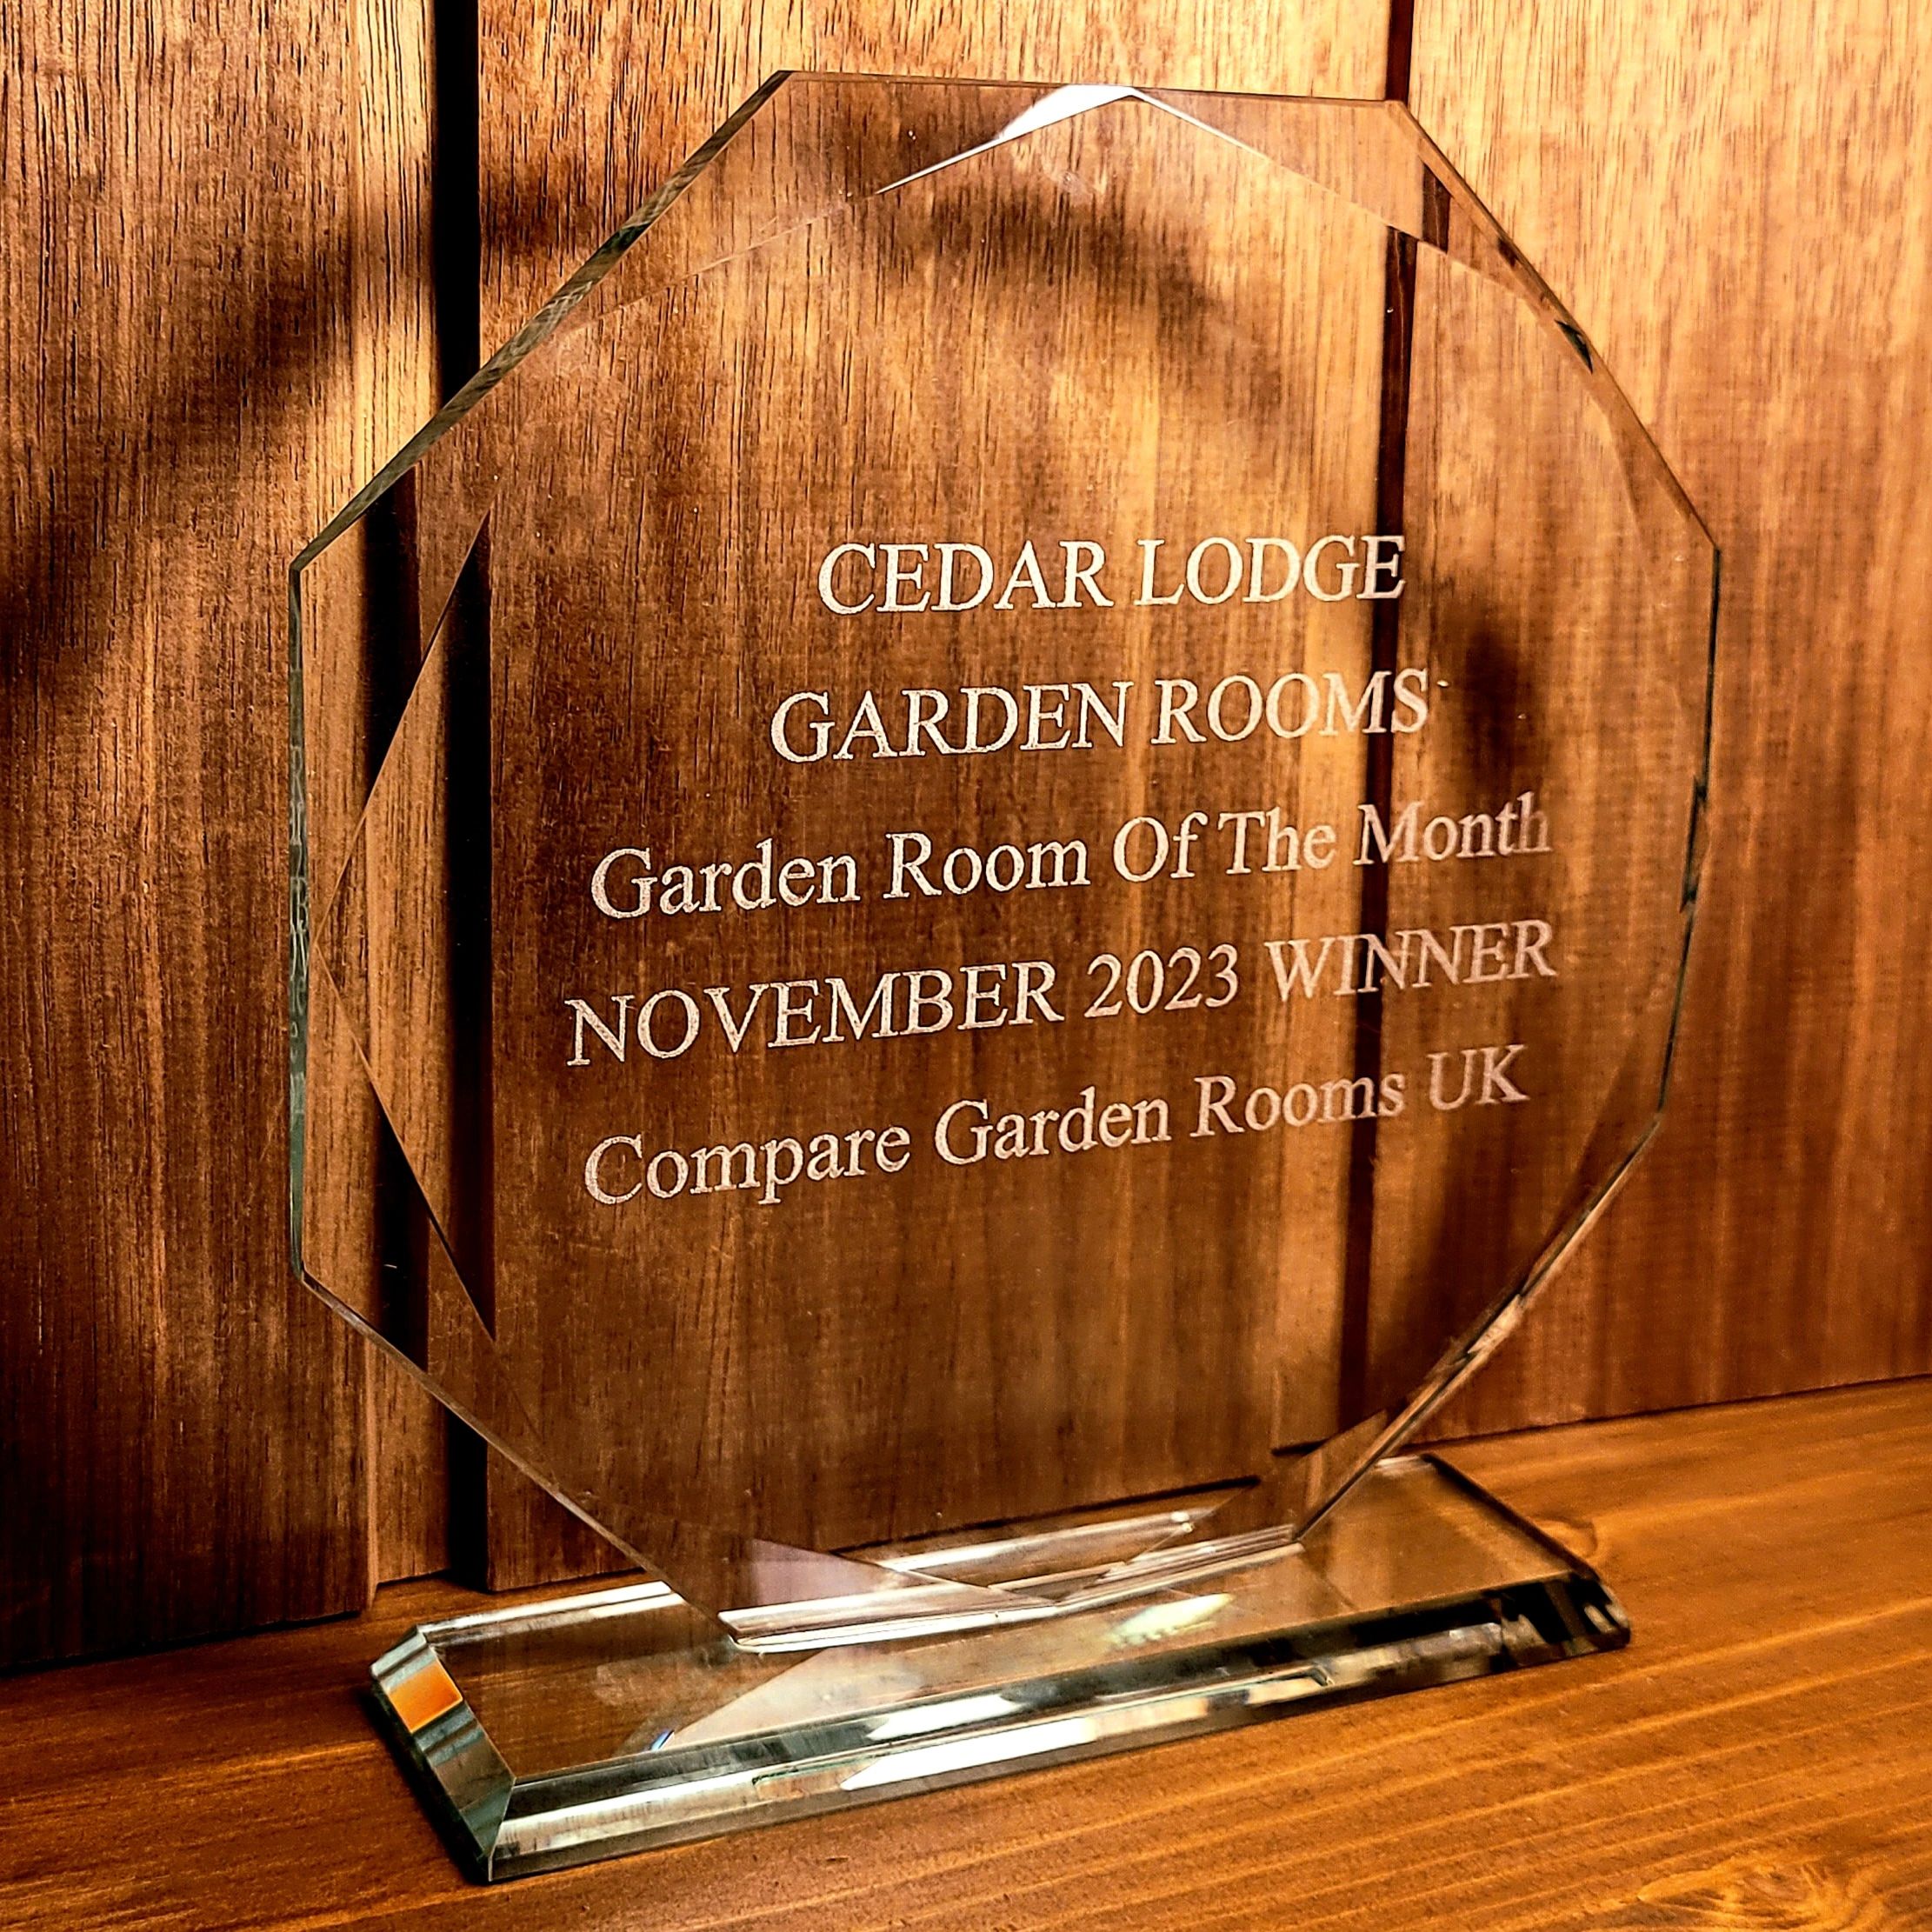 Compare garden rooms uk award